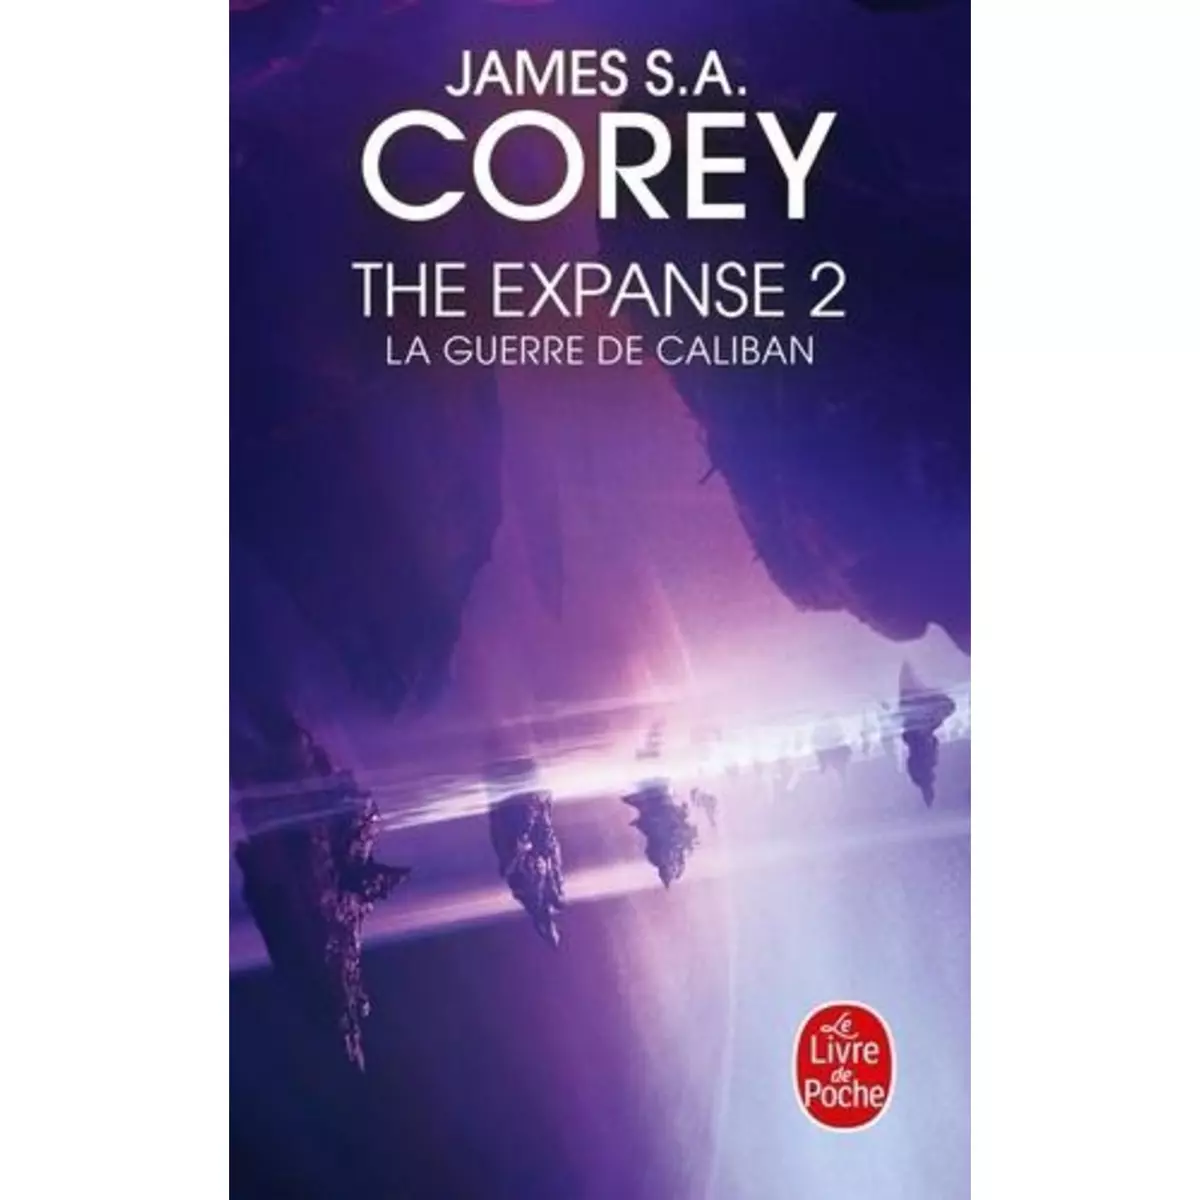  THE EXPANSE TOME 2 : LA GUERRE DE CALIBAN, Corey James S. A.